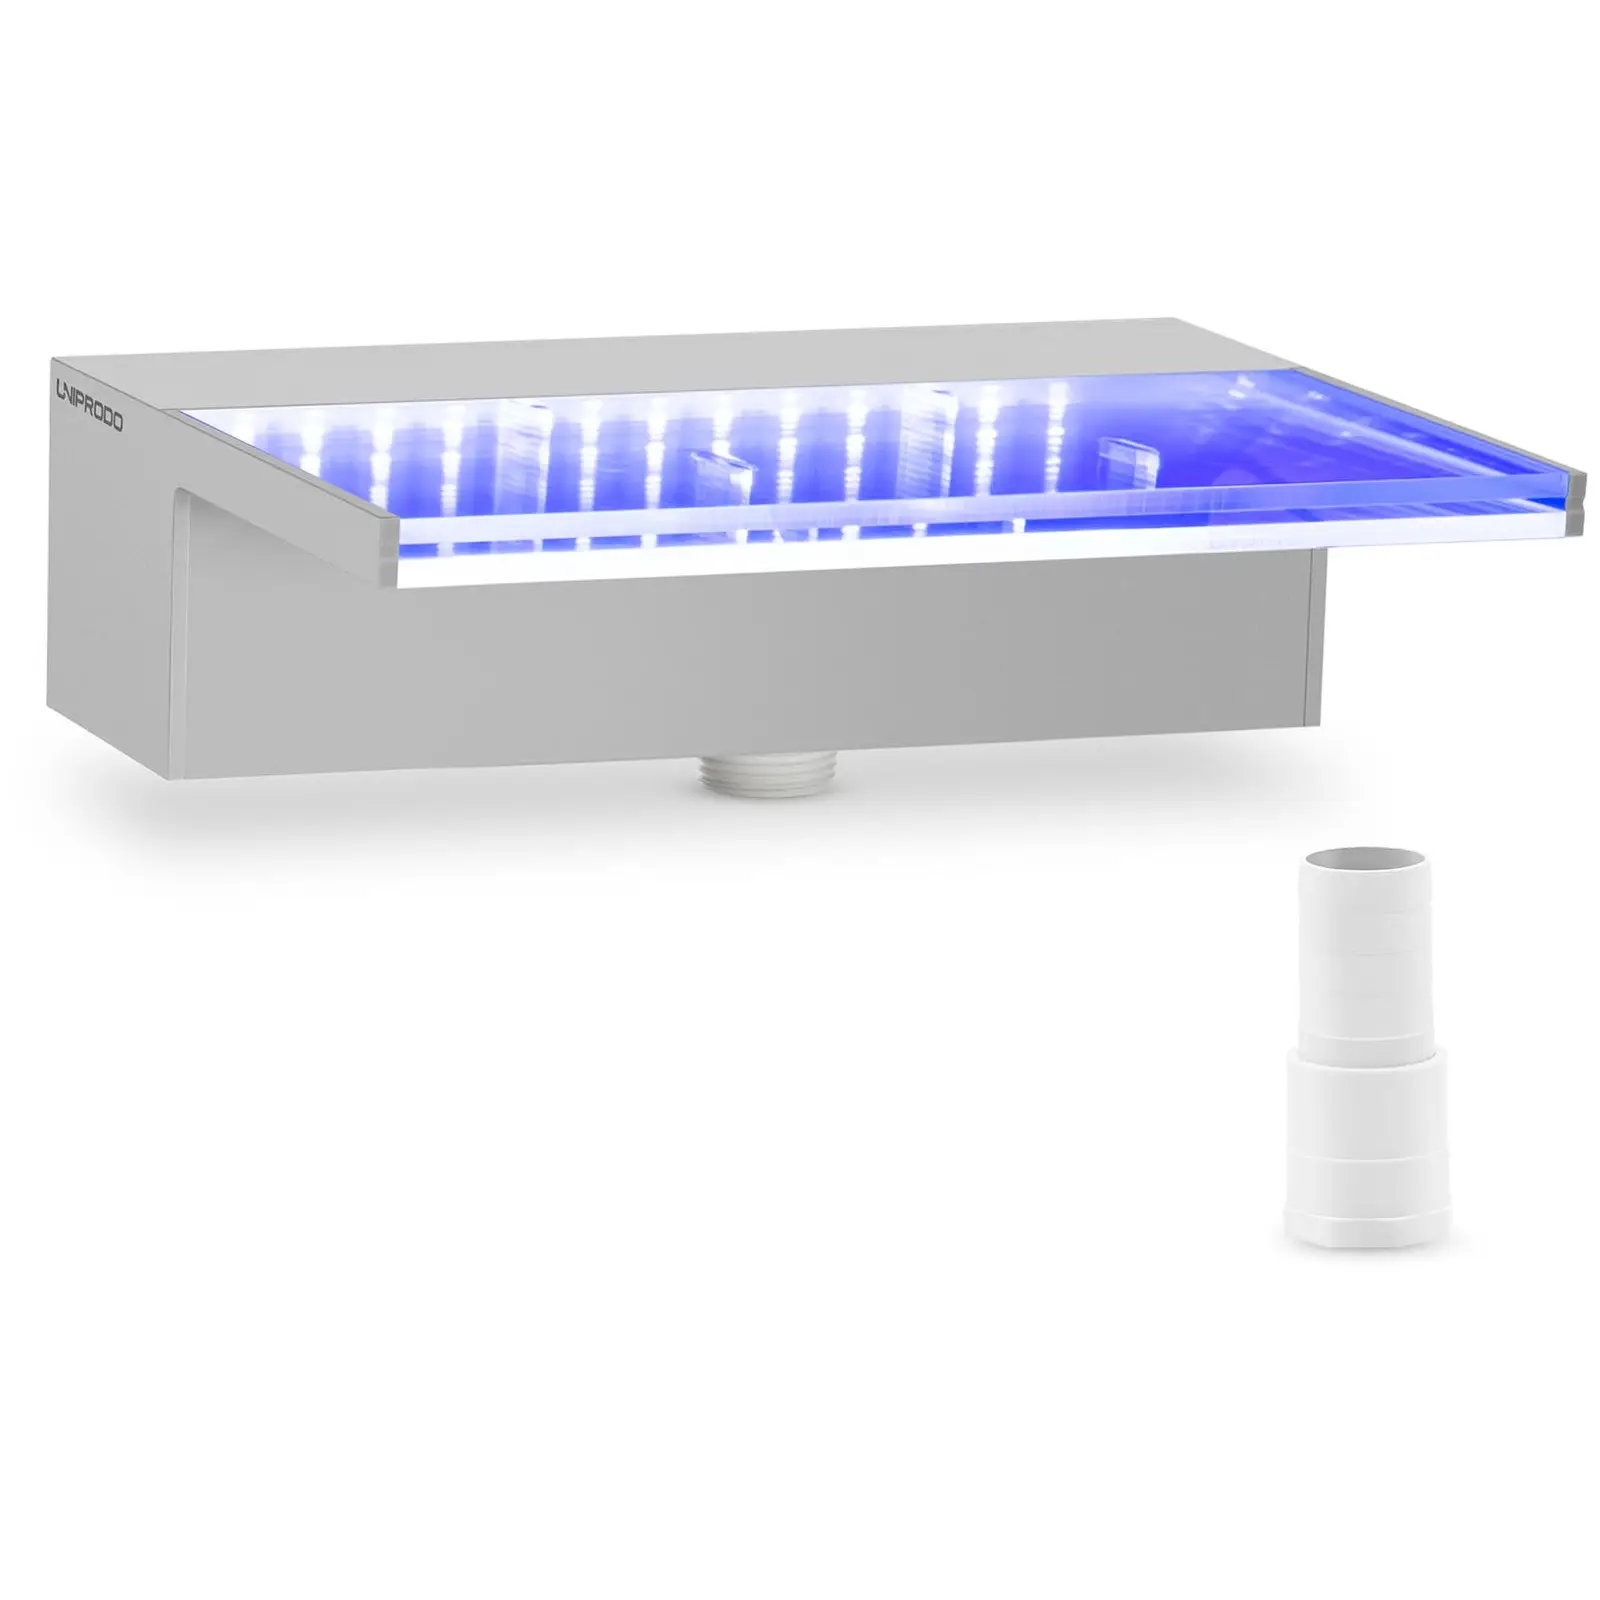 Medence szökőkút - 30 cm - LED világítás - kék / fehér - mély vízkifolyó